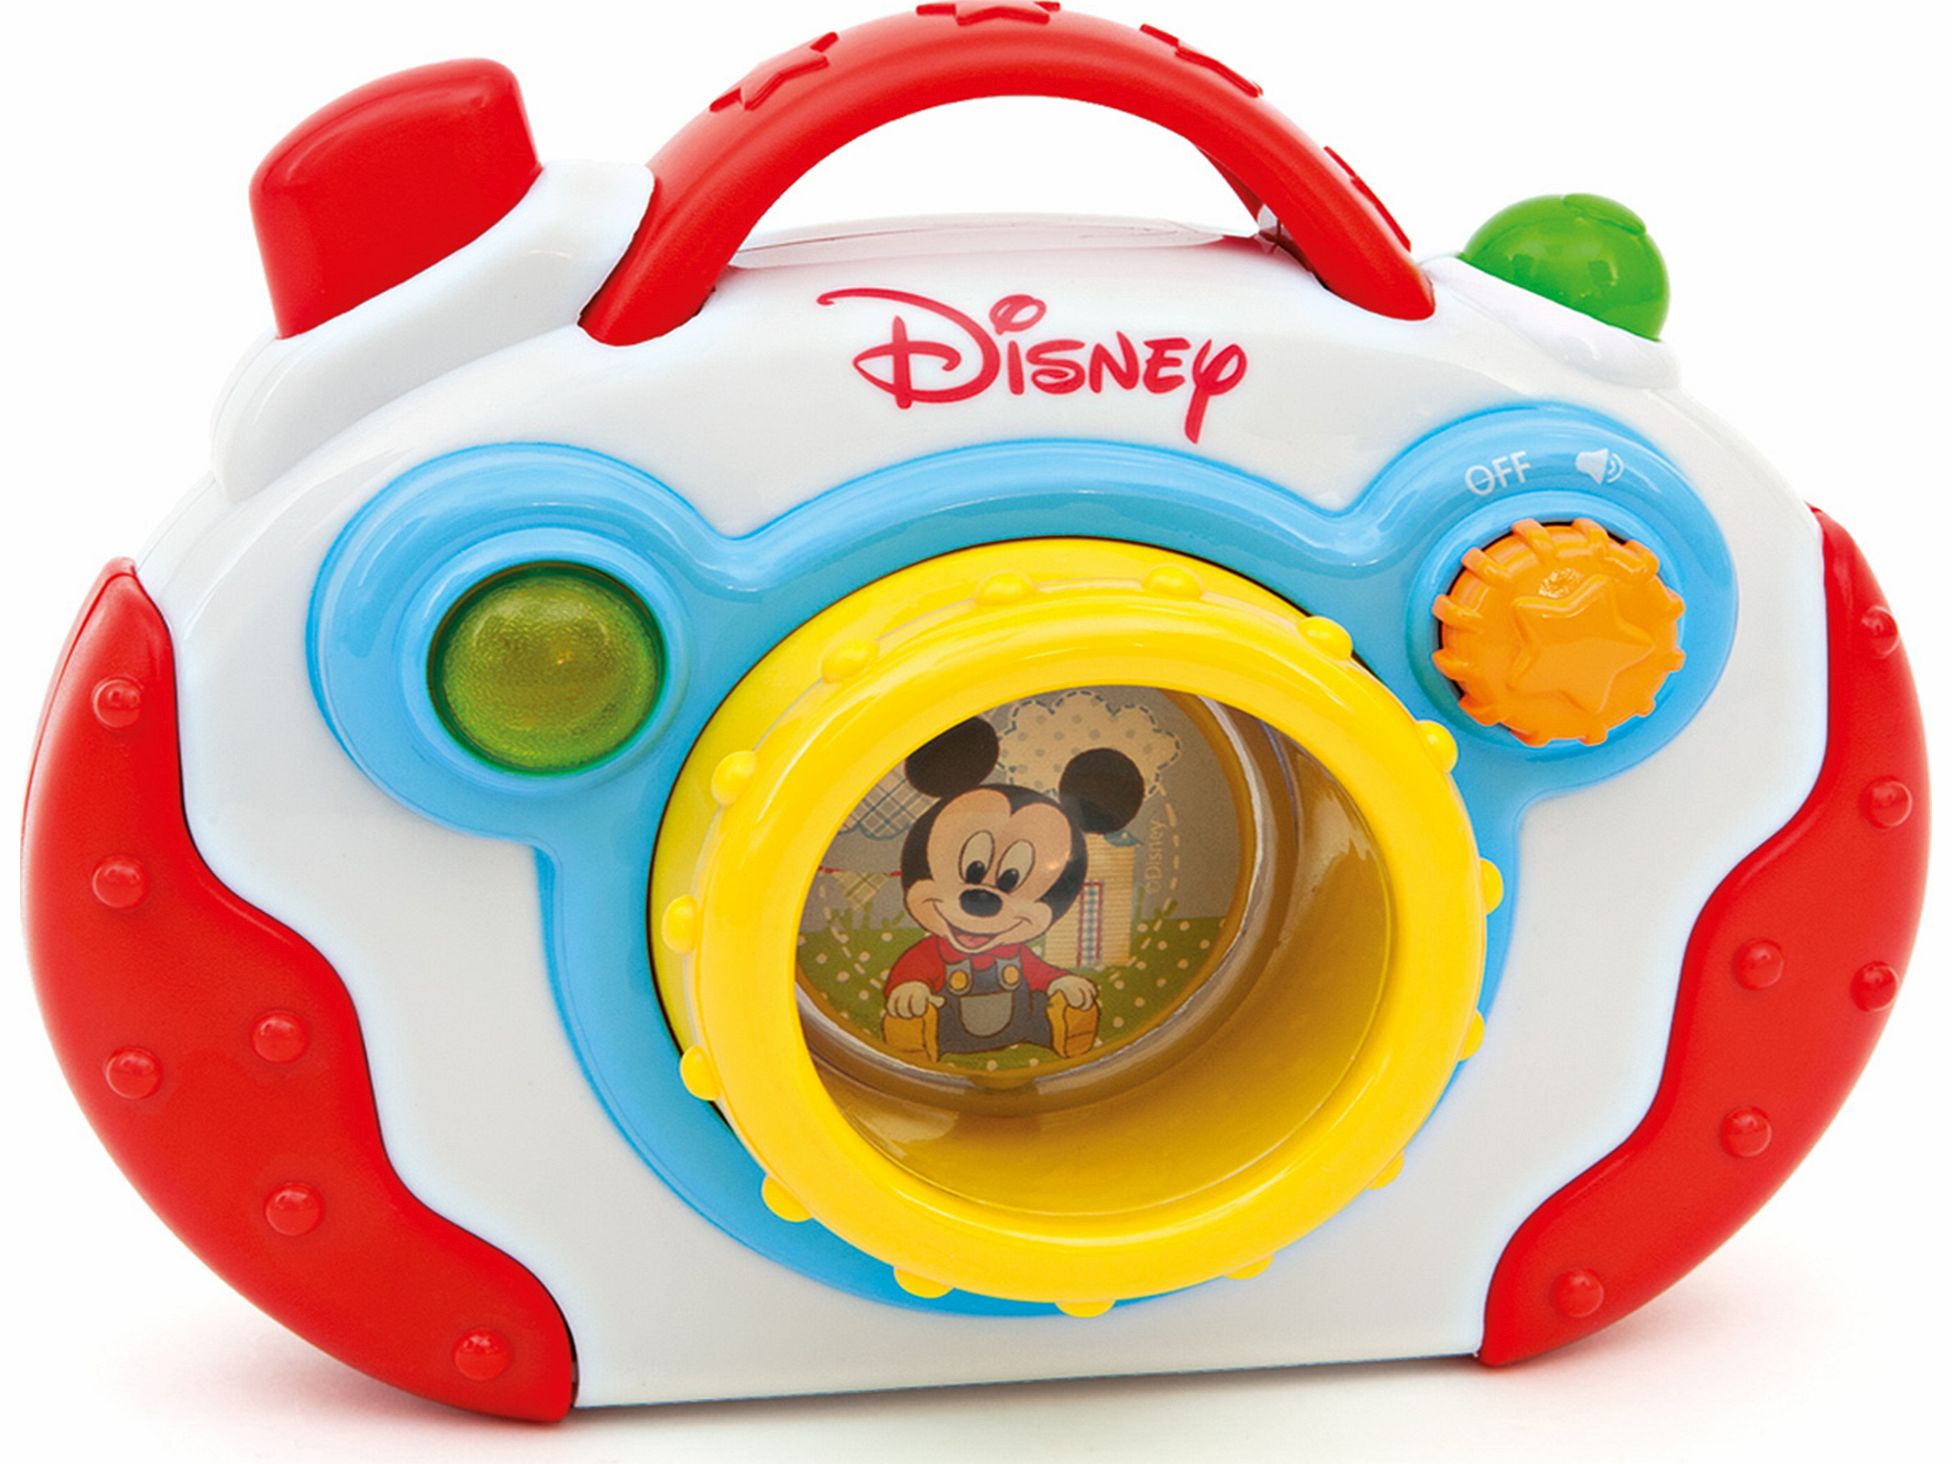 Disney Mickey Mouse Baby Mickey My 1st Camera